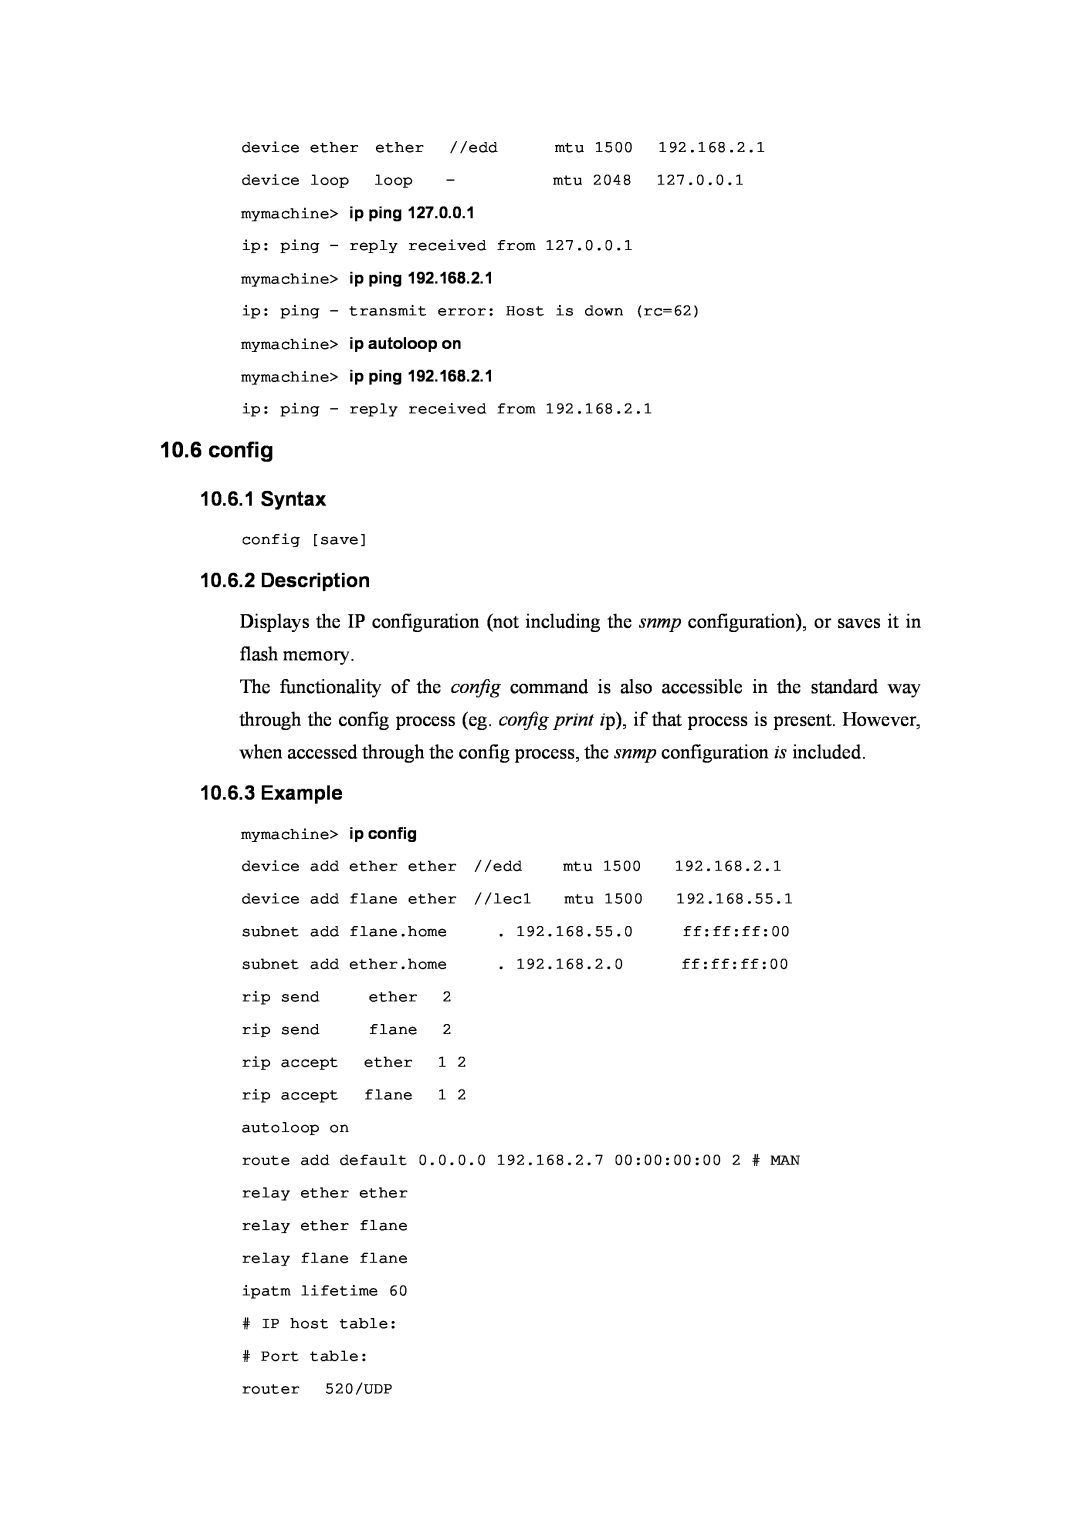 Atlantis Land A02-RA(Atmos)_ME01 manual config, Syntax, Description, Example 